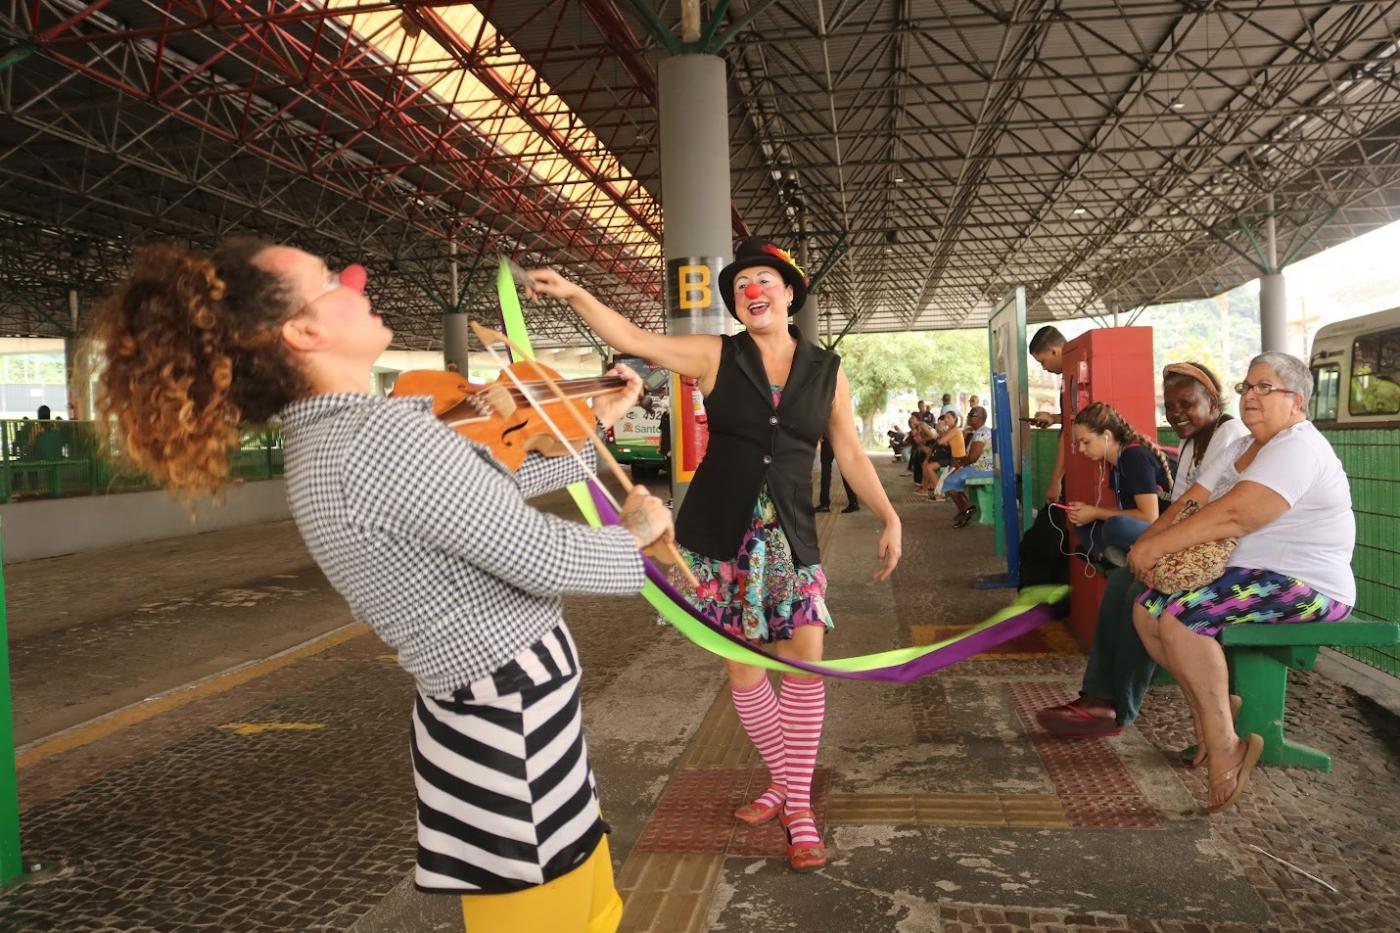 artistas fazem performance de circo #paratodosverem 